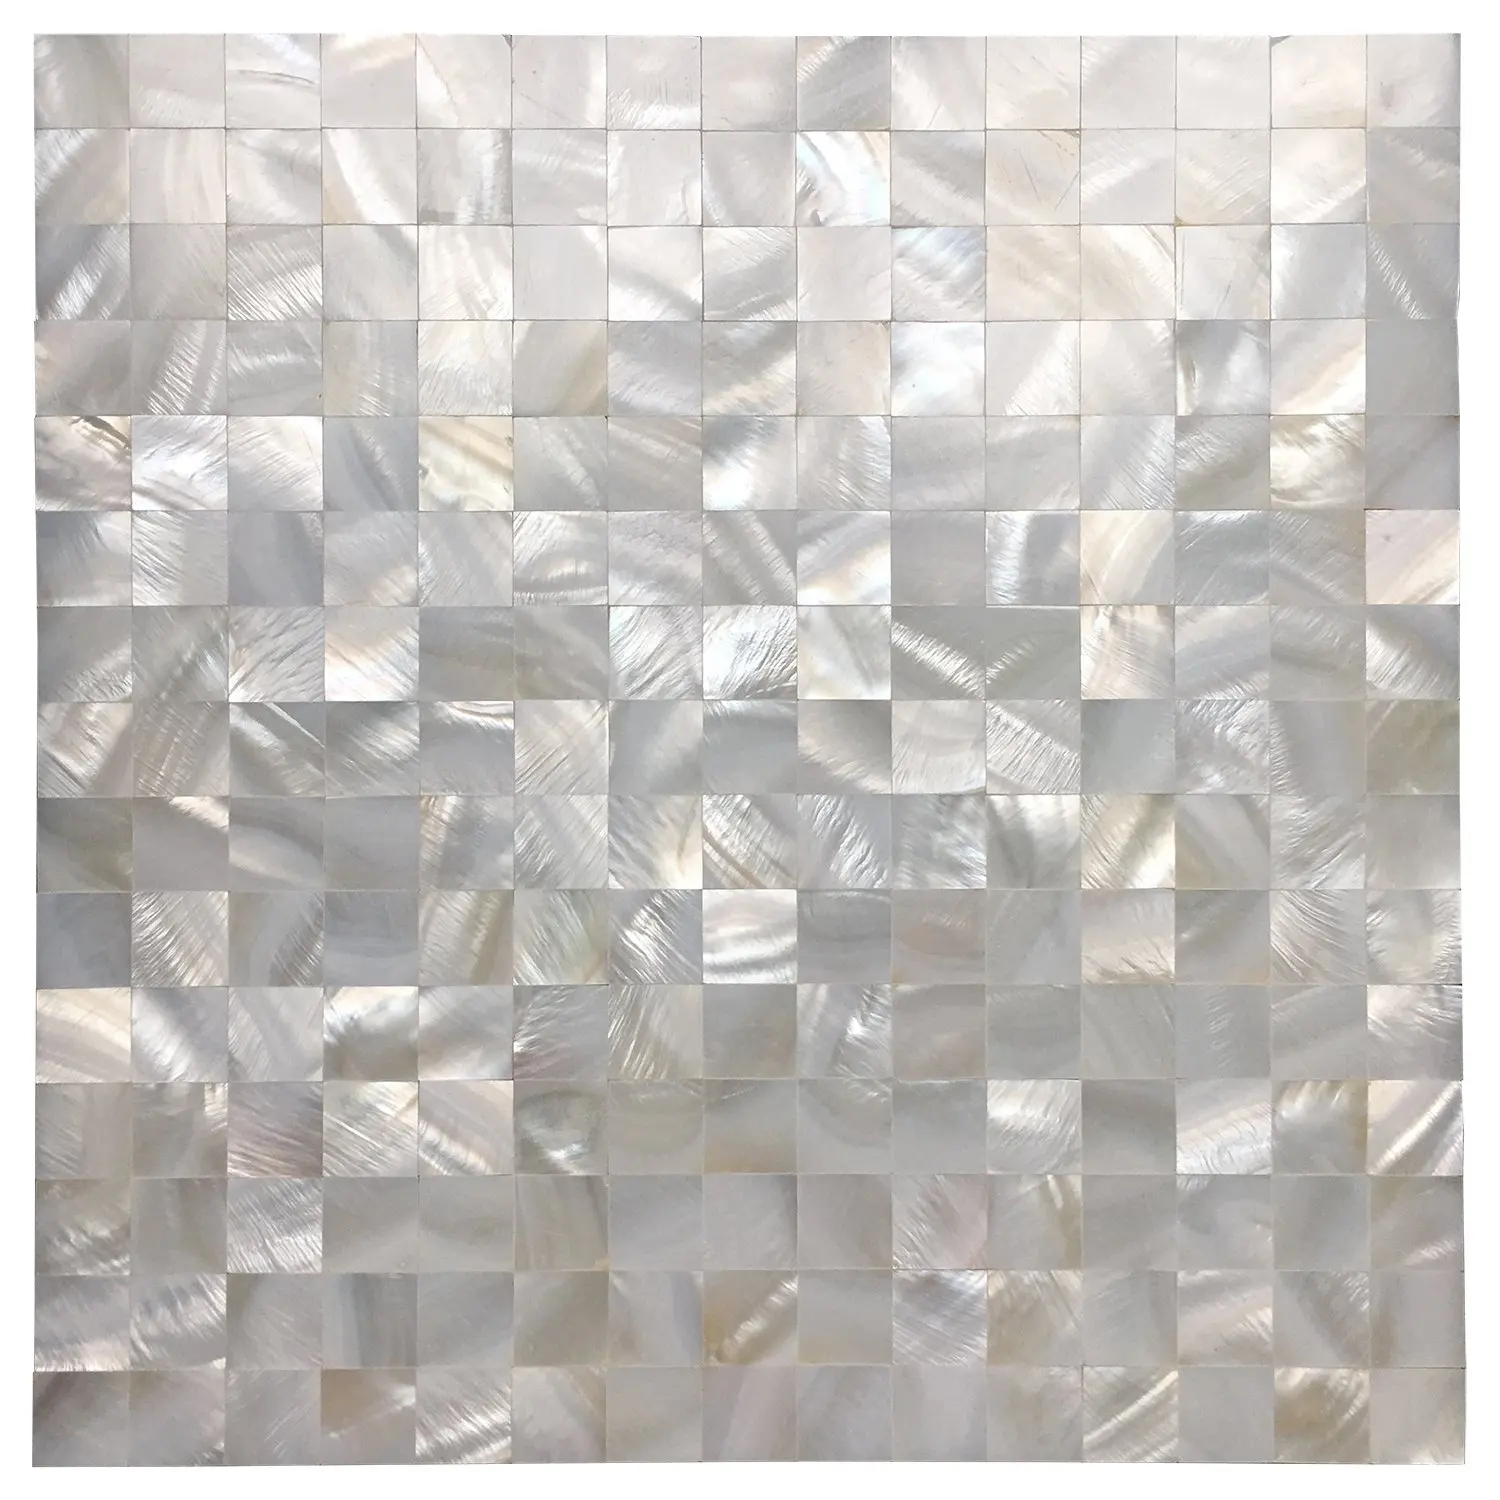 

Art3d Белая Квадратная бесшовная мозаичная плитка из жемчужной раковины для ванной, кухни, бассейна, 10 панелей, 9,6 кв. футов